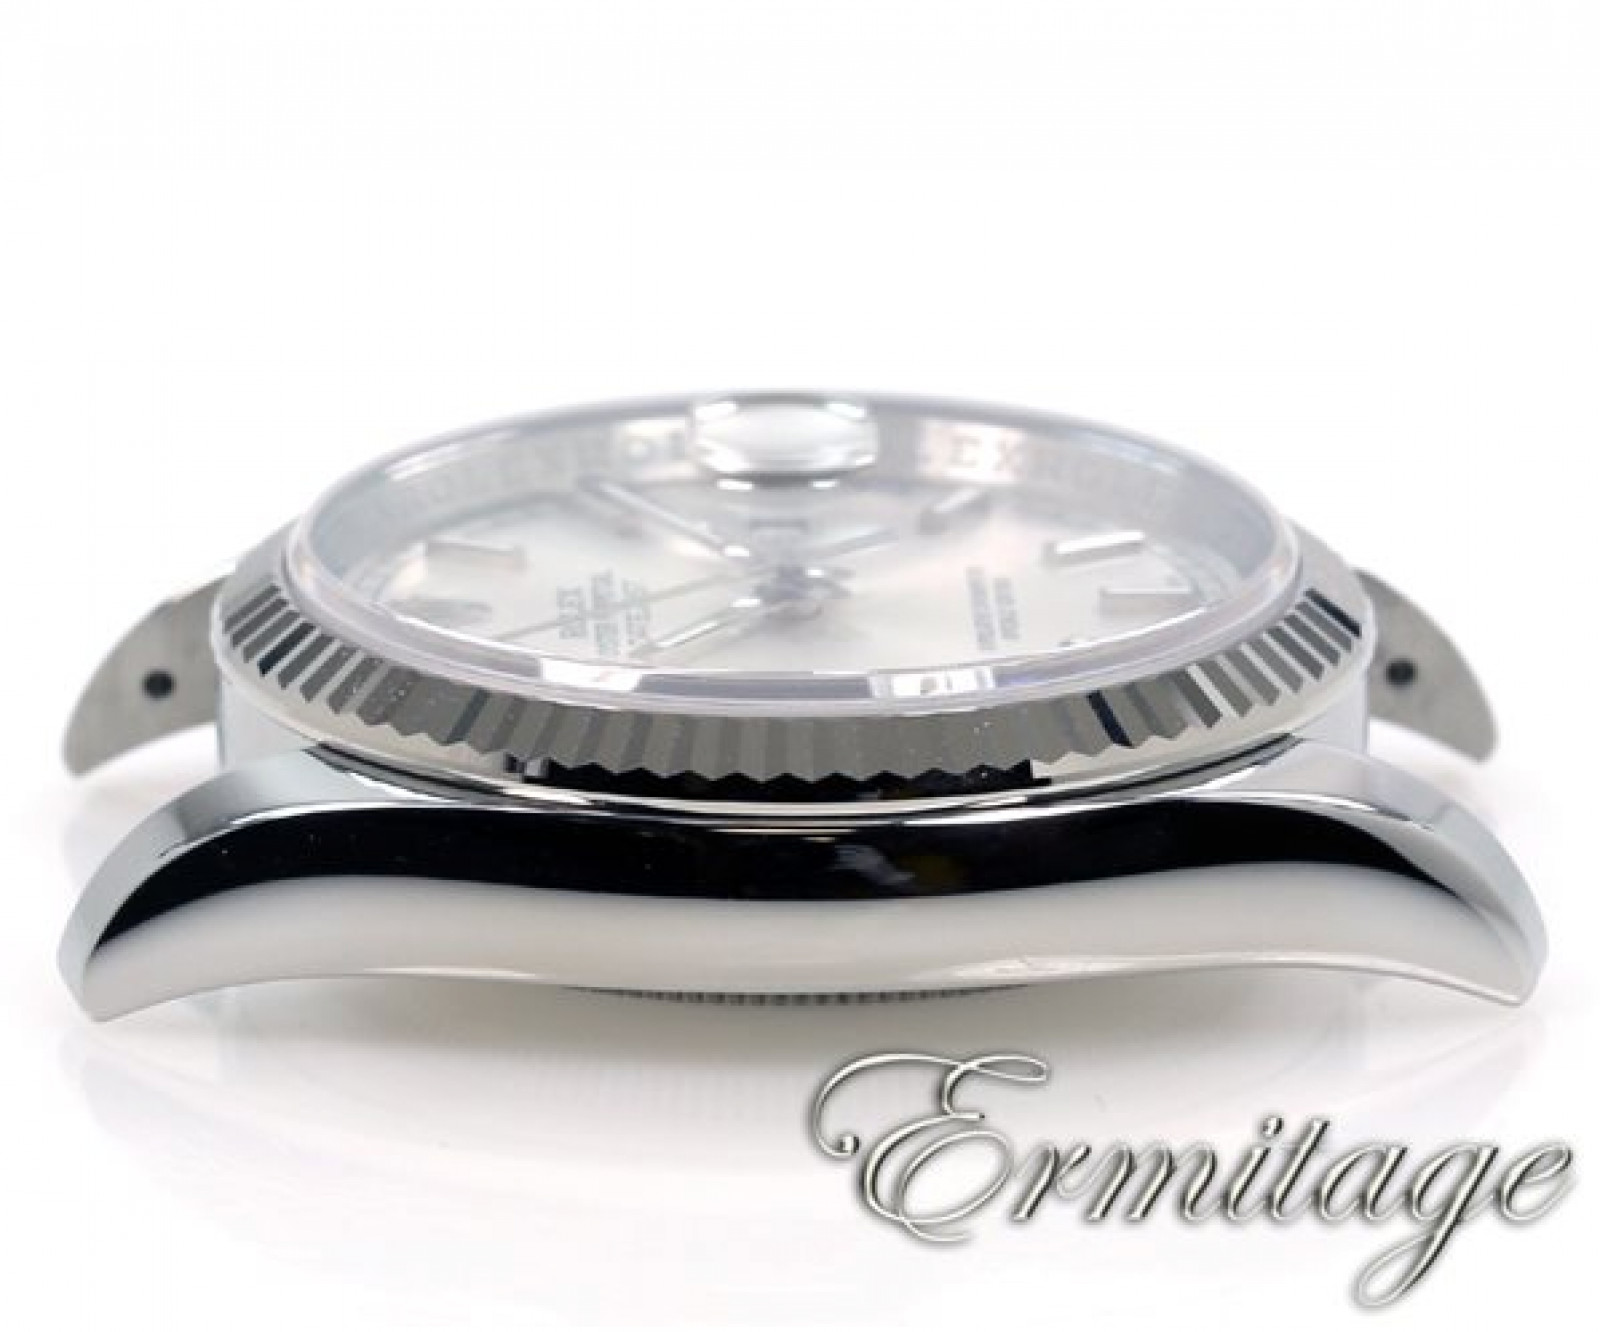 2014 Silver Rolex Datejust Ref. 116234